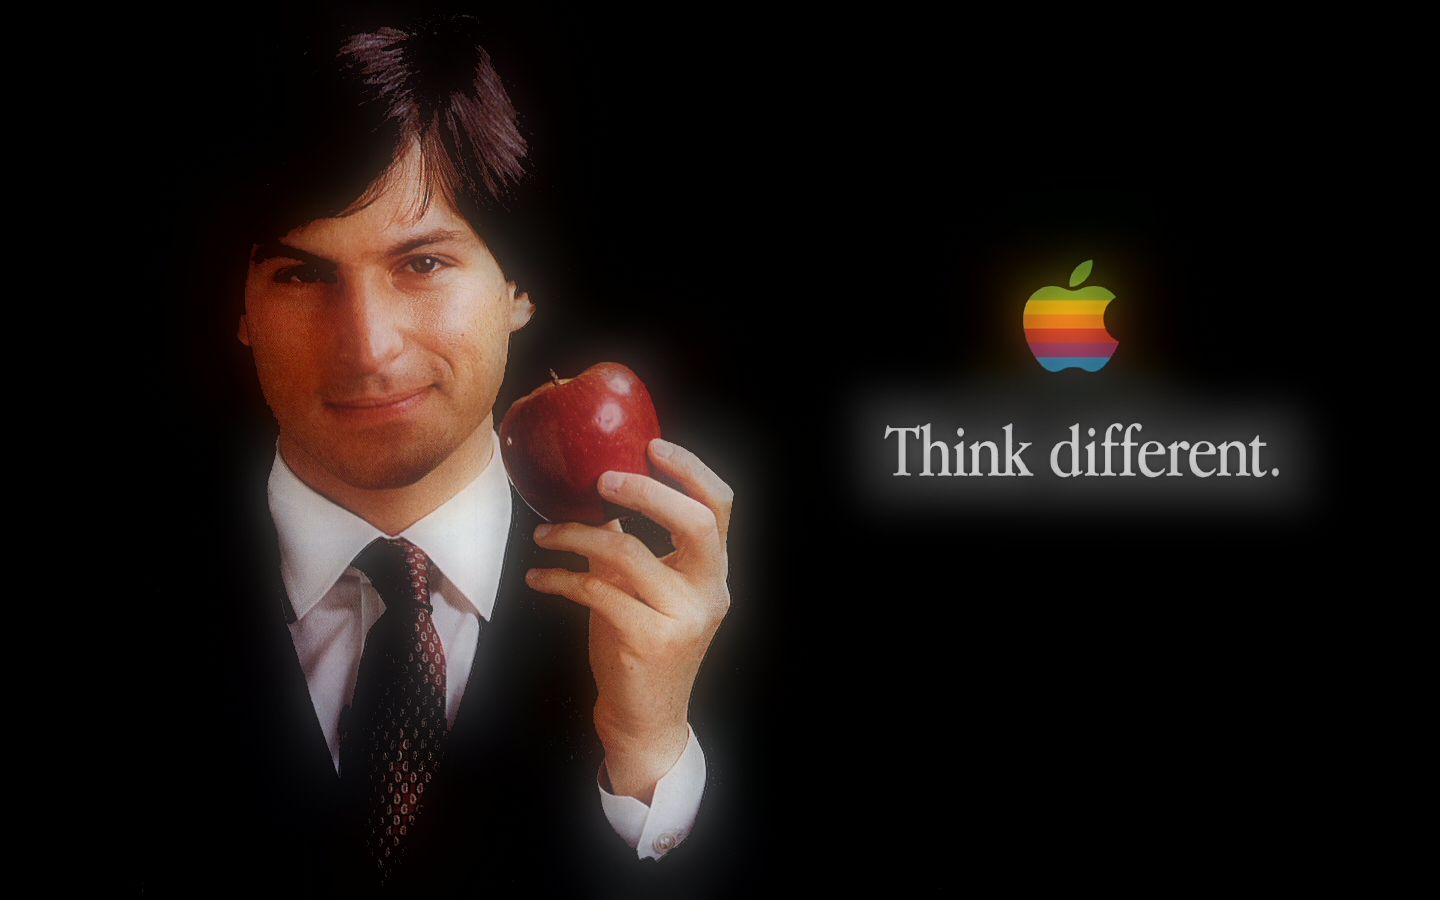 Kata Kata Bijak Dari Steve Jobs Kaskus